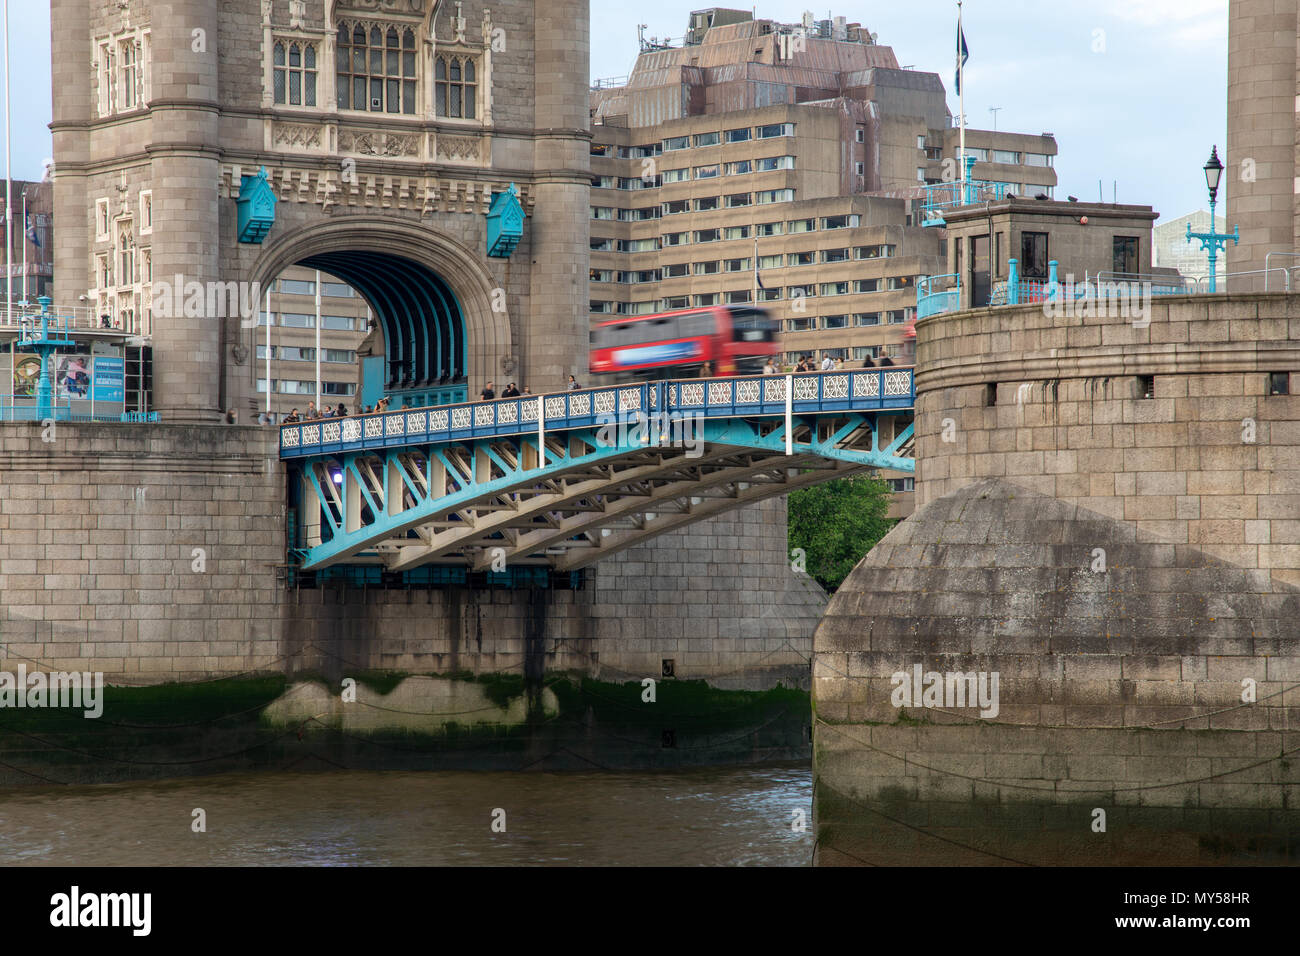 Londres, Angleterre, Royaume-Uni - juin 1, 2018 : un bus à impériale rouge traverse le London Tower Bridge. Banque D'Images